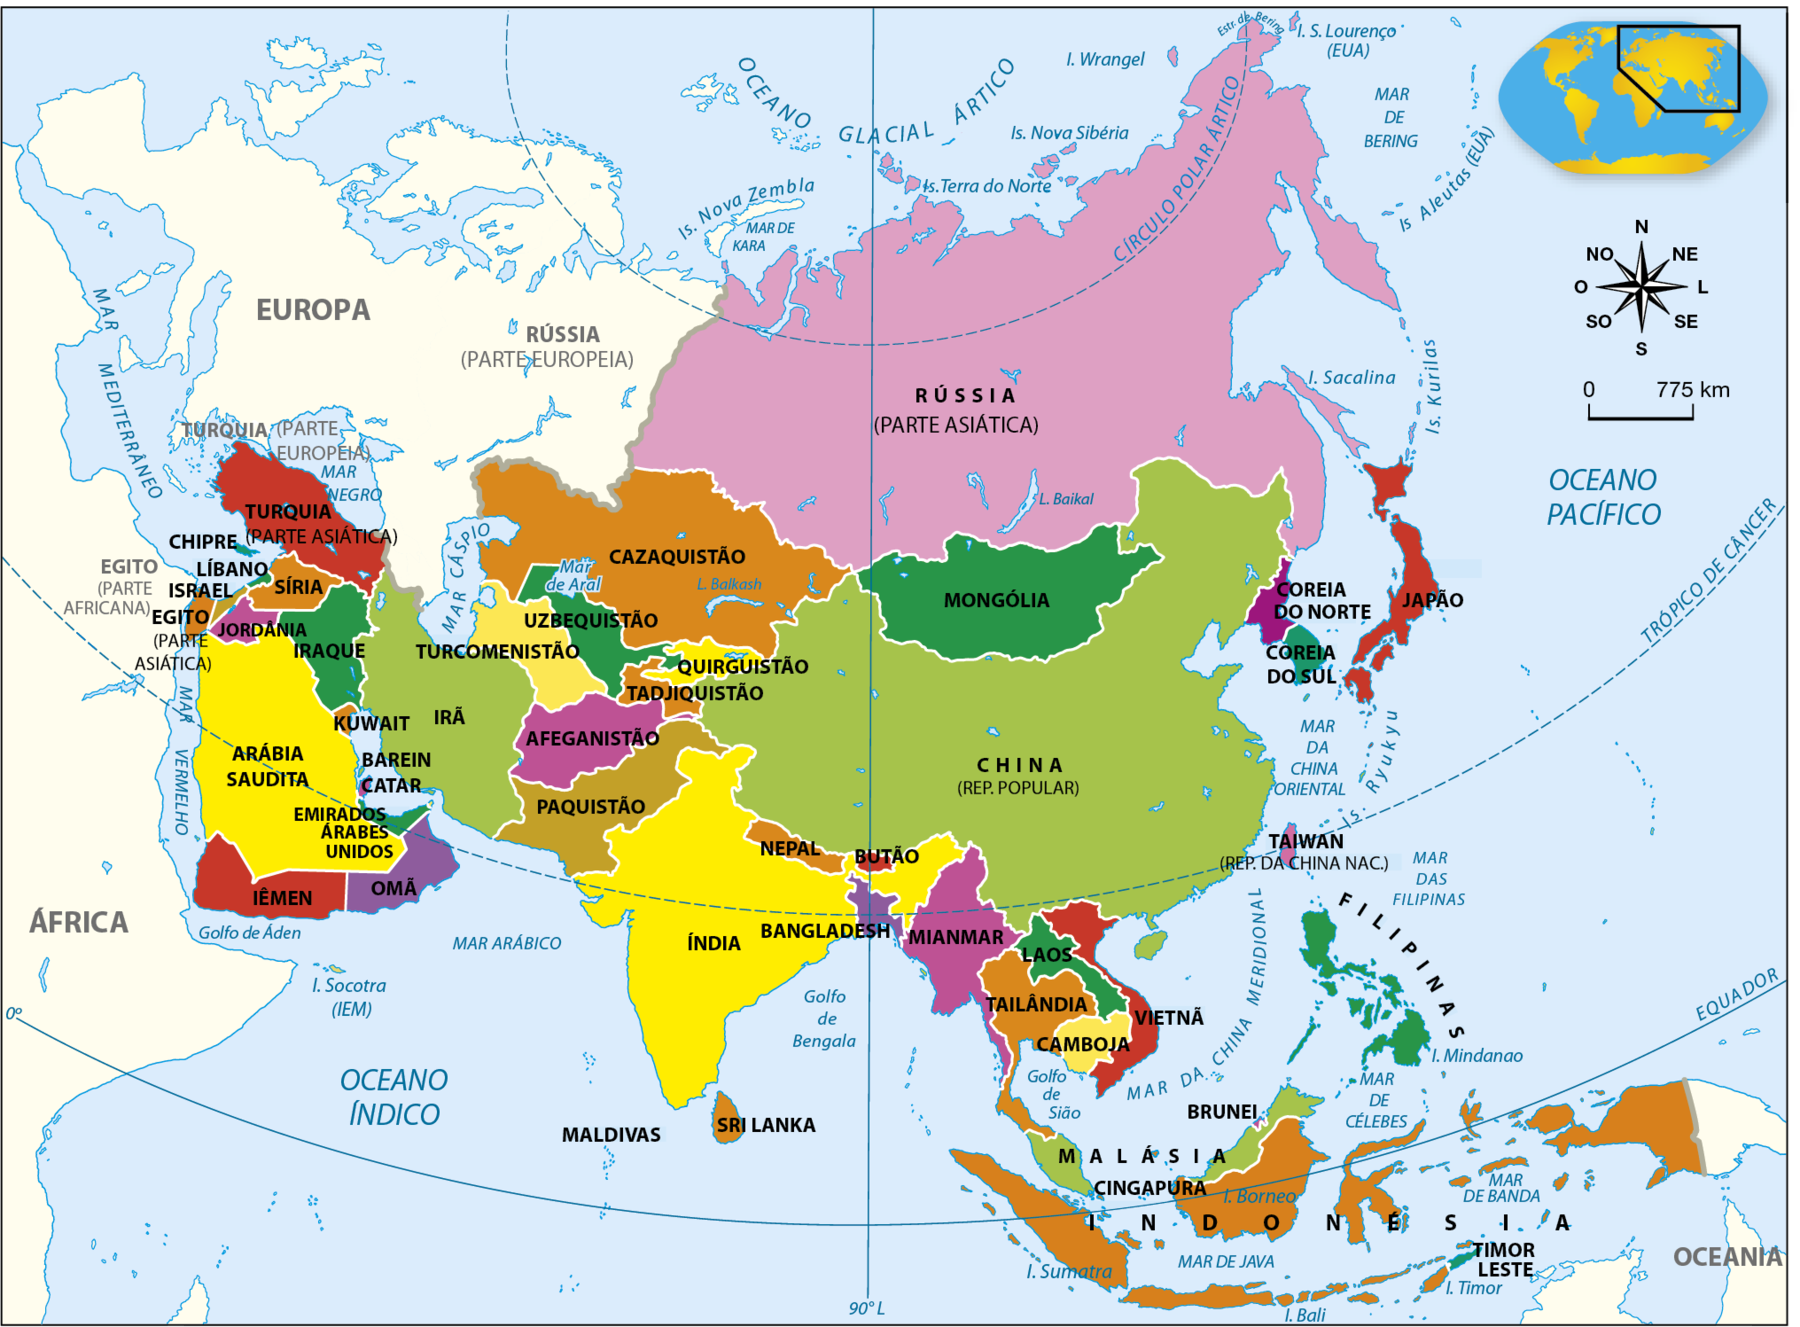 Mapa. Ásia: Divisão Política. O mapa apresenta os países do continente asiático. Estão representados: Rússia (parte asiática), Turquia (parte asiática), Cazaquistão, Mongólia, China (República Popular), Japão, Chipre, Síria, Irã, Turcomenistão, Uzbequistão, Quirguistão, Coreia do Norte, Líbano, Jordânia, Iraque, Coreia do Sul, Egito (parte asiática), Israel, Jordânia, Iraque, Tadjiquistão, Arábia Saudita, Kuwait, Afeganistão, Barein, Catar, Emirados Árabes, Paquistão, Índia, Nepal, Butão, Taiwan (território da República da China Nacional), Iêmen, Omã, Bangladesh, Mianmar, Vietnã, Filipinas, Laos, Tailândia, Camboja, Maldivas, Sri Lanka, Malásia, Brunei, Cingapura, Indonésia e Timor Leste. Os países estão representados por diferentes cores. O Oceano Índico, ao sul da Ásia, o Oceano Glacial Ártico, ao norte, o Oceano Pacífico, à leste, além de outros mares, também estão representados. Na parte direita, rosa dos ventos e escala de 0 a 775 quilômetros.